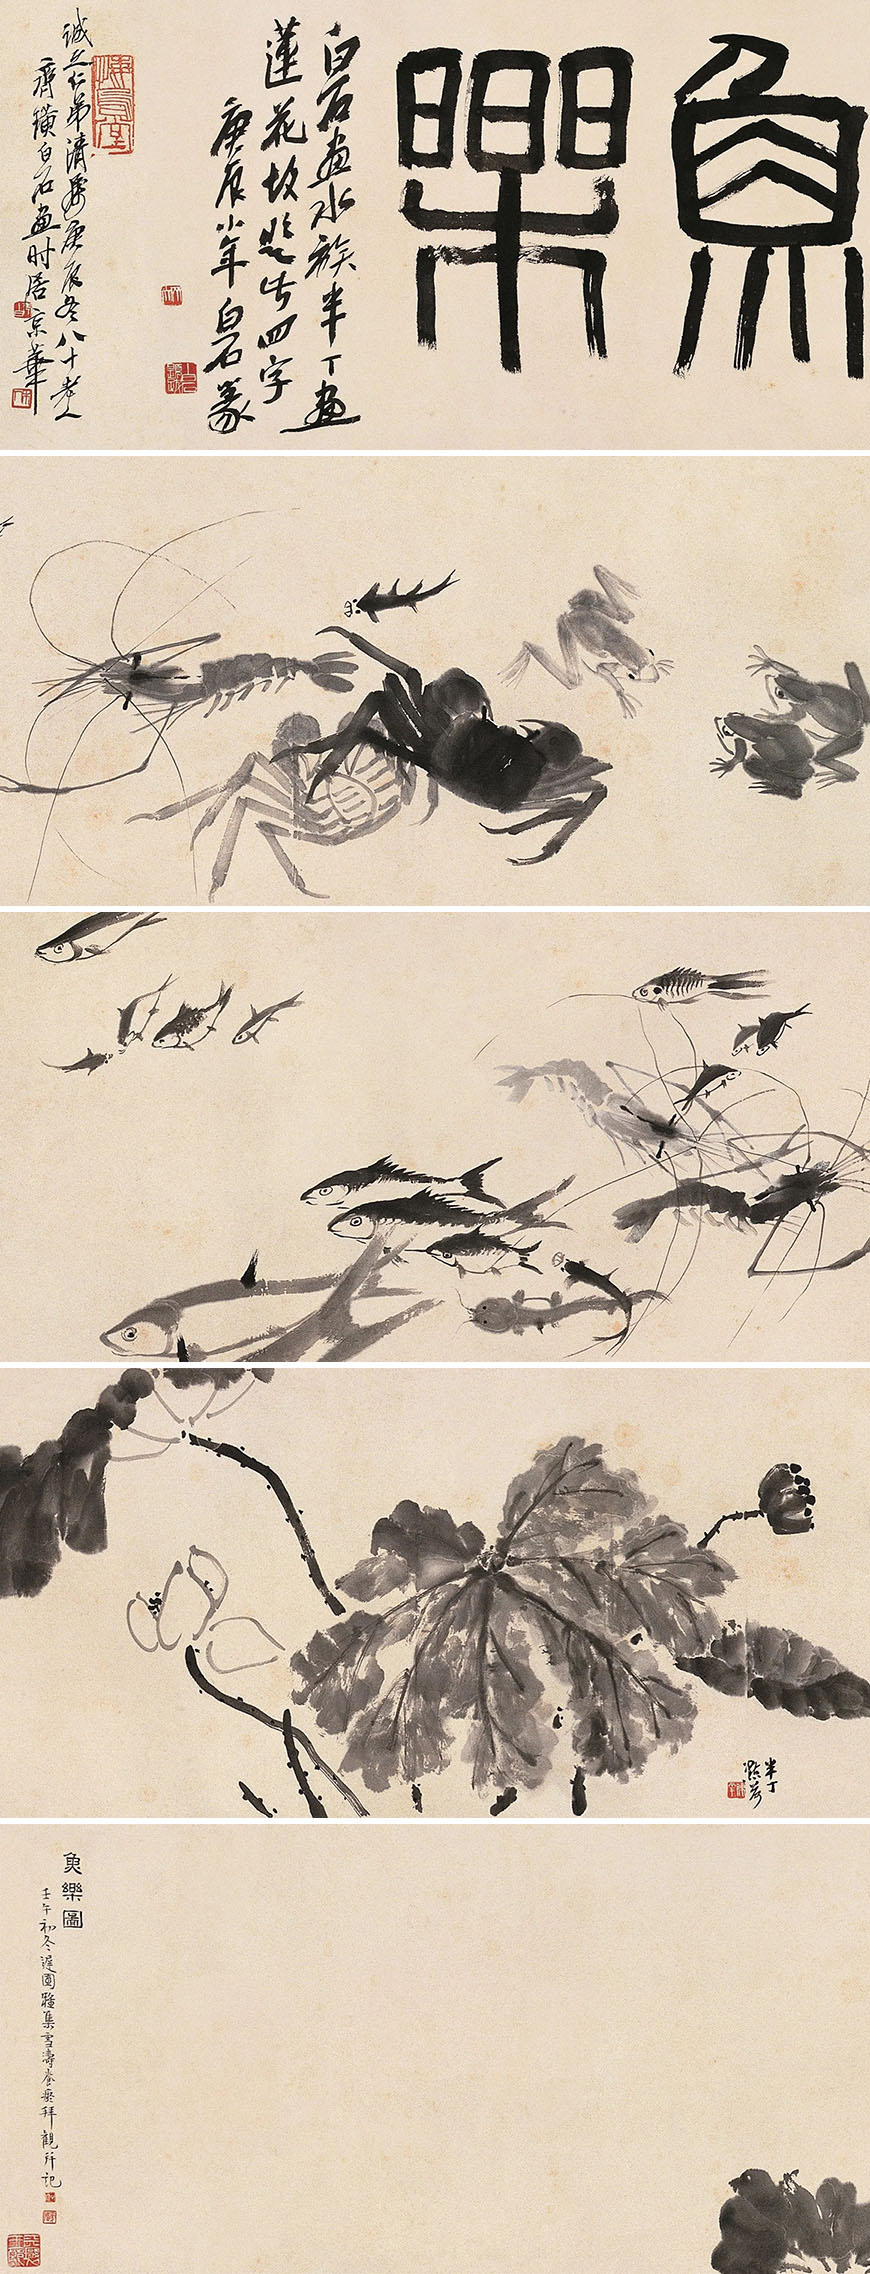  视道如花：齐白石京圈作品展 京津地区画家的一次集体亮相